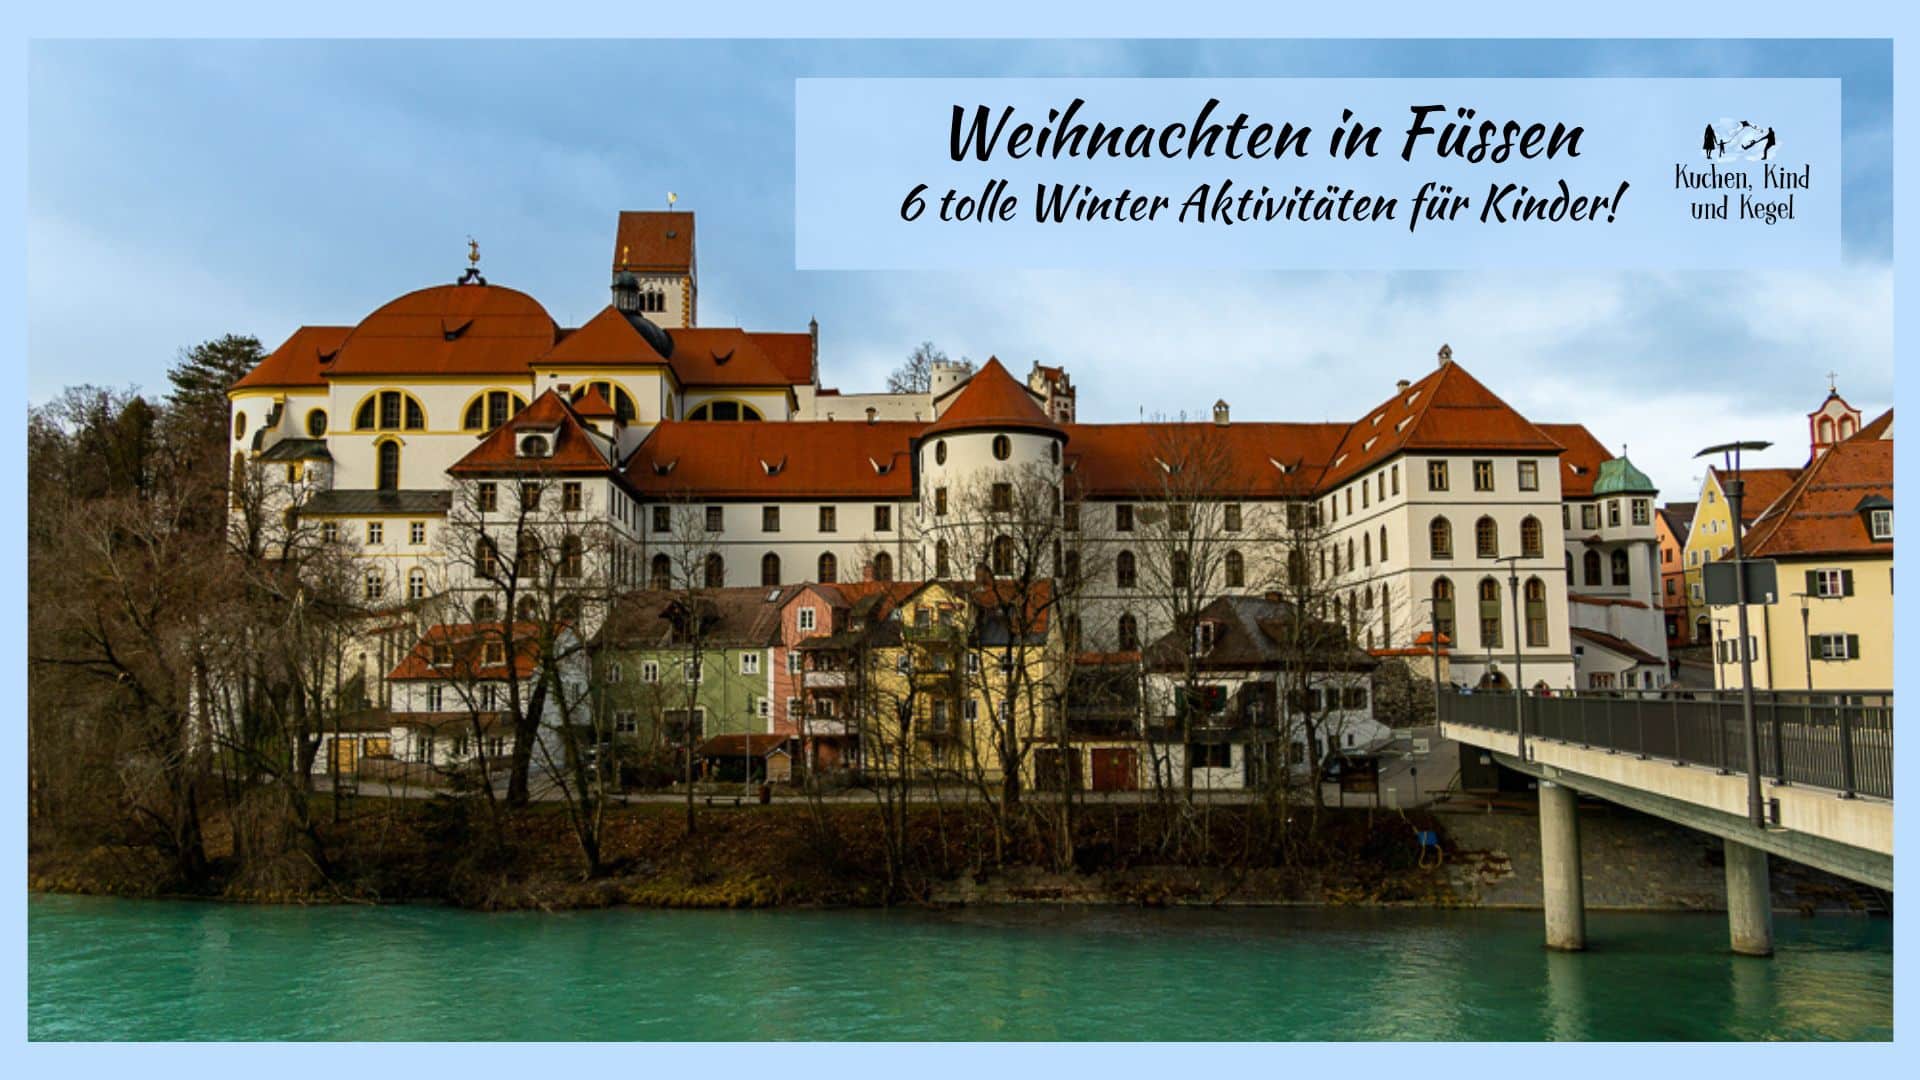 Weihnachten in Füssen: 6 tolle Winter Aktivitäten für Kinder!